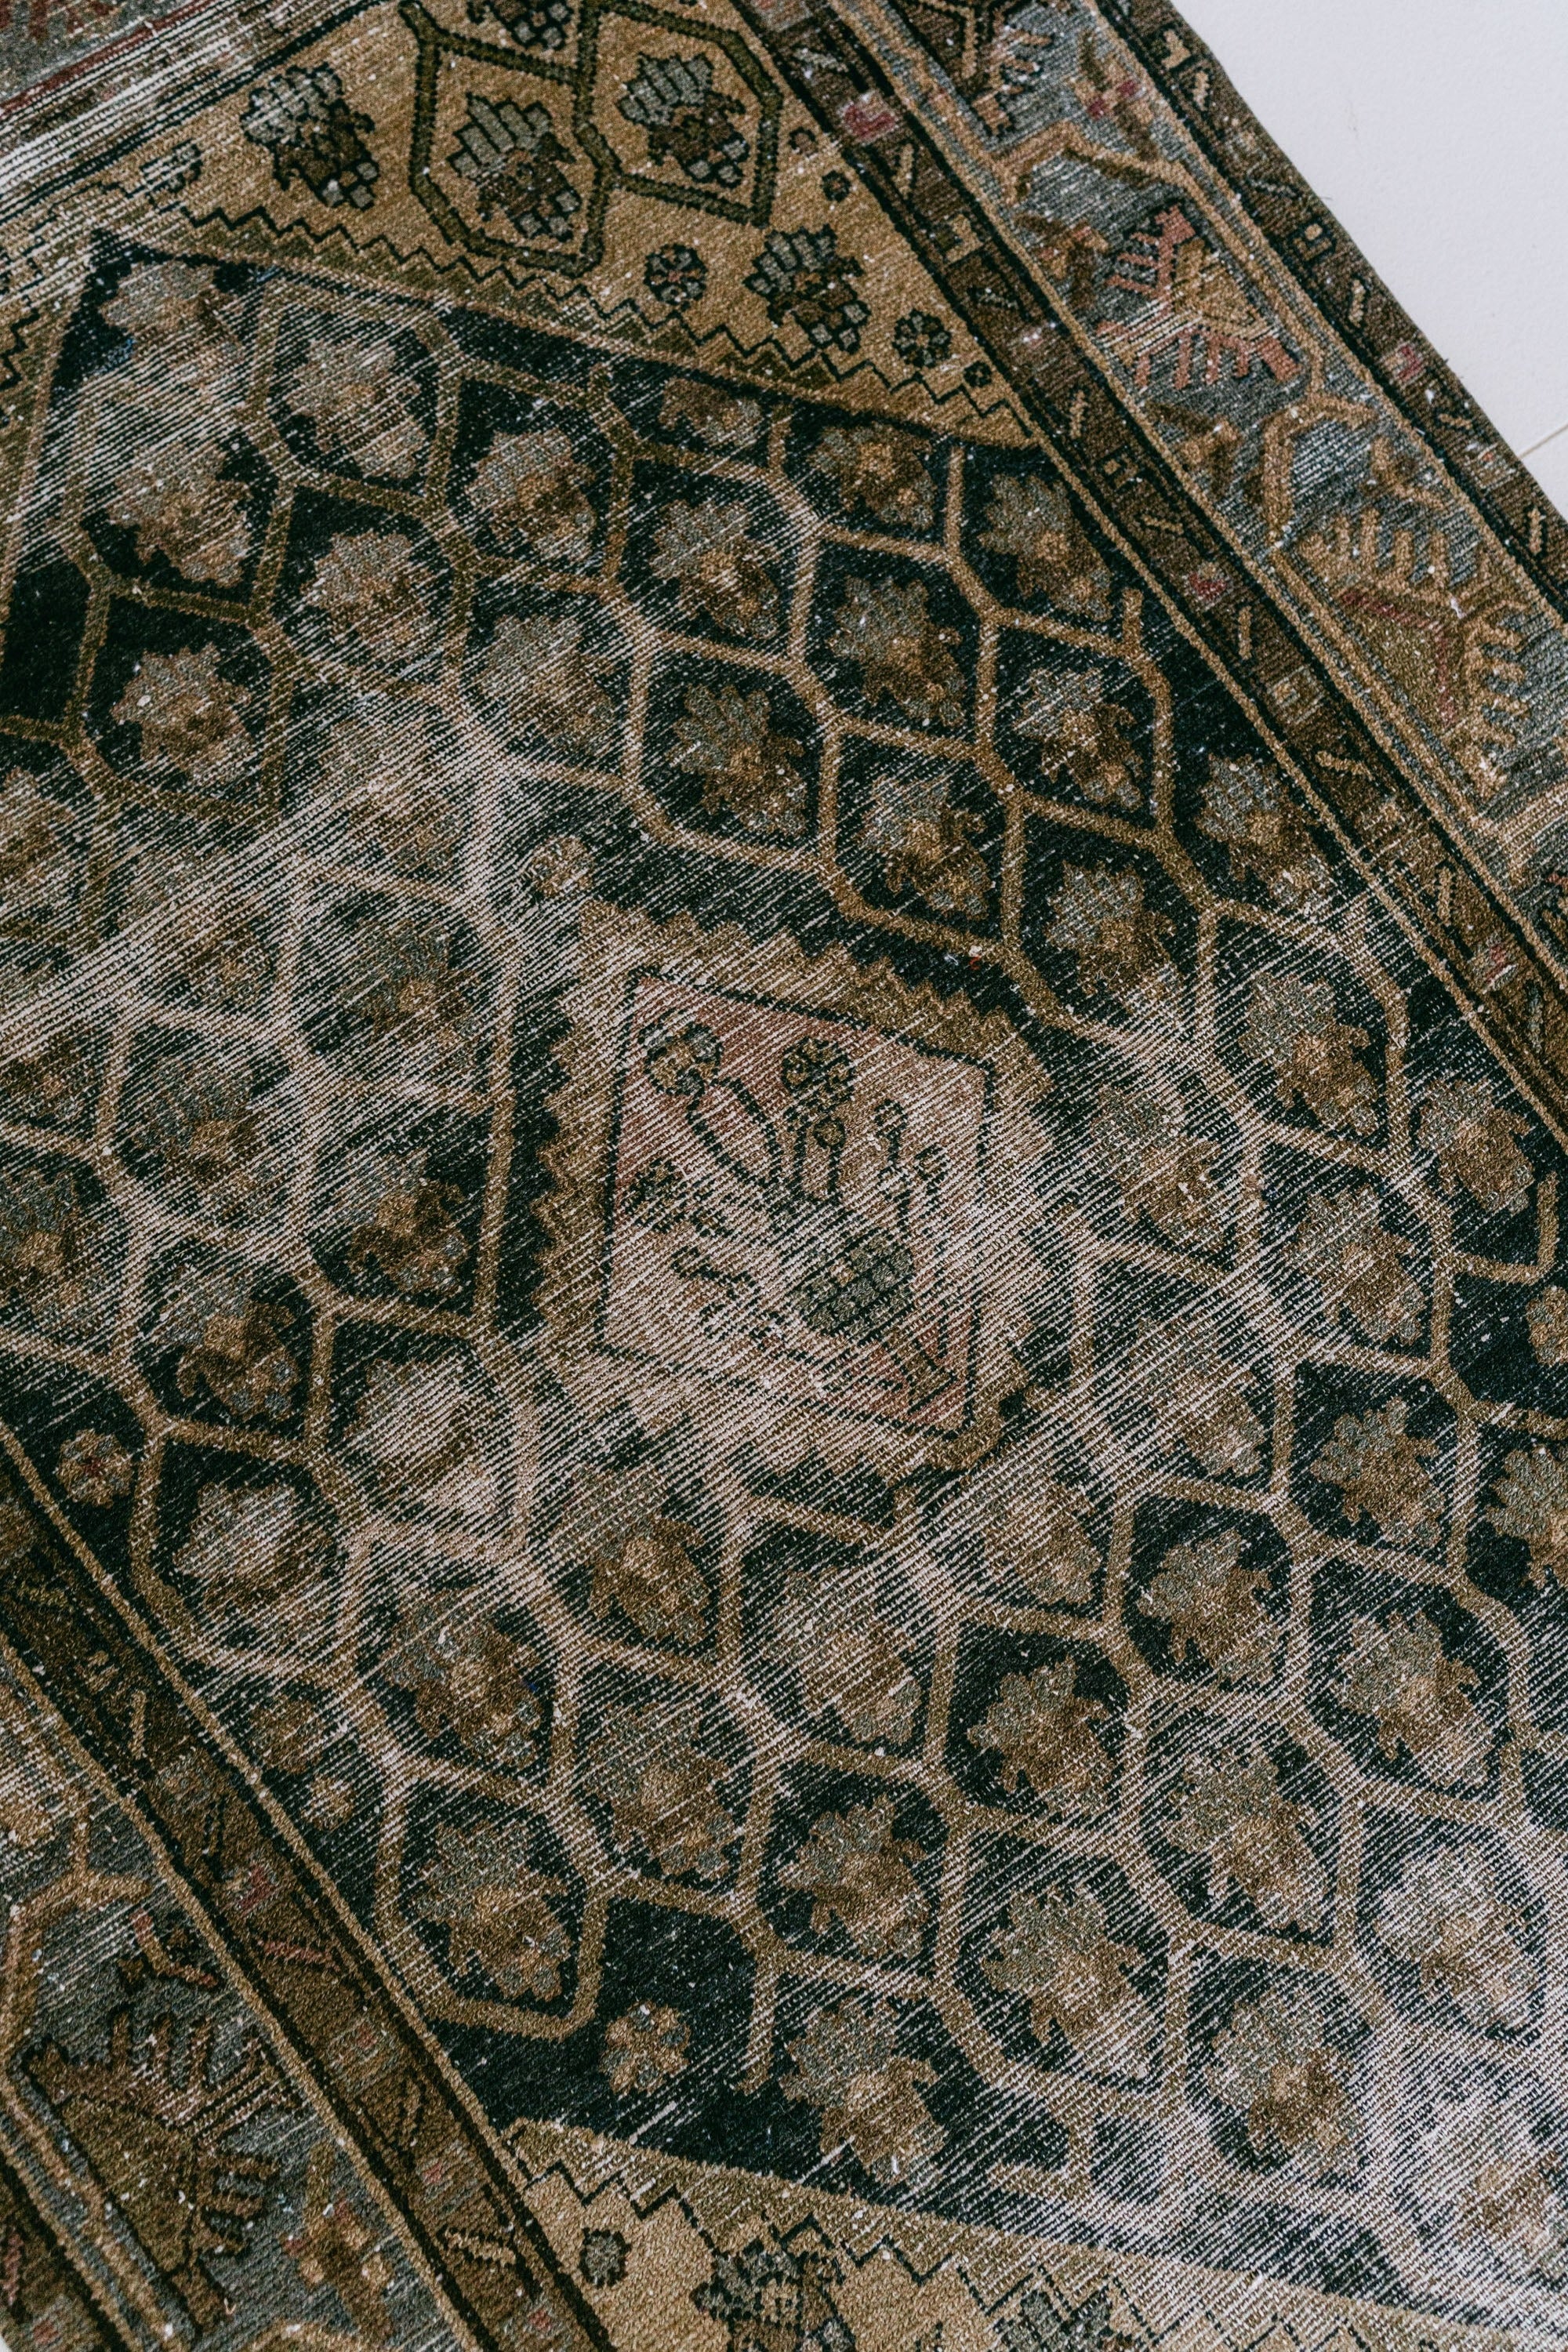 District Loom Vintage Malayer scatter rug Dune